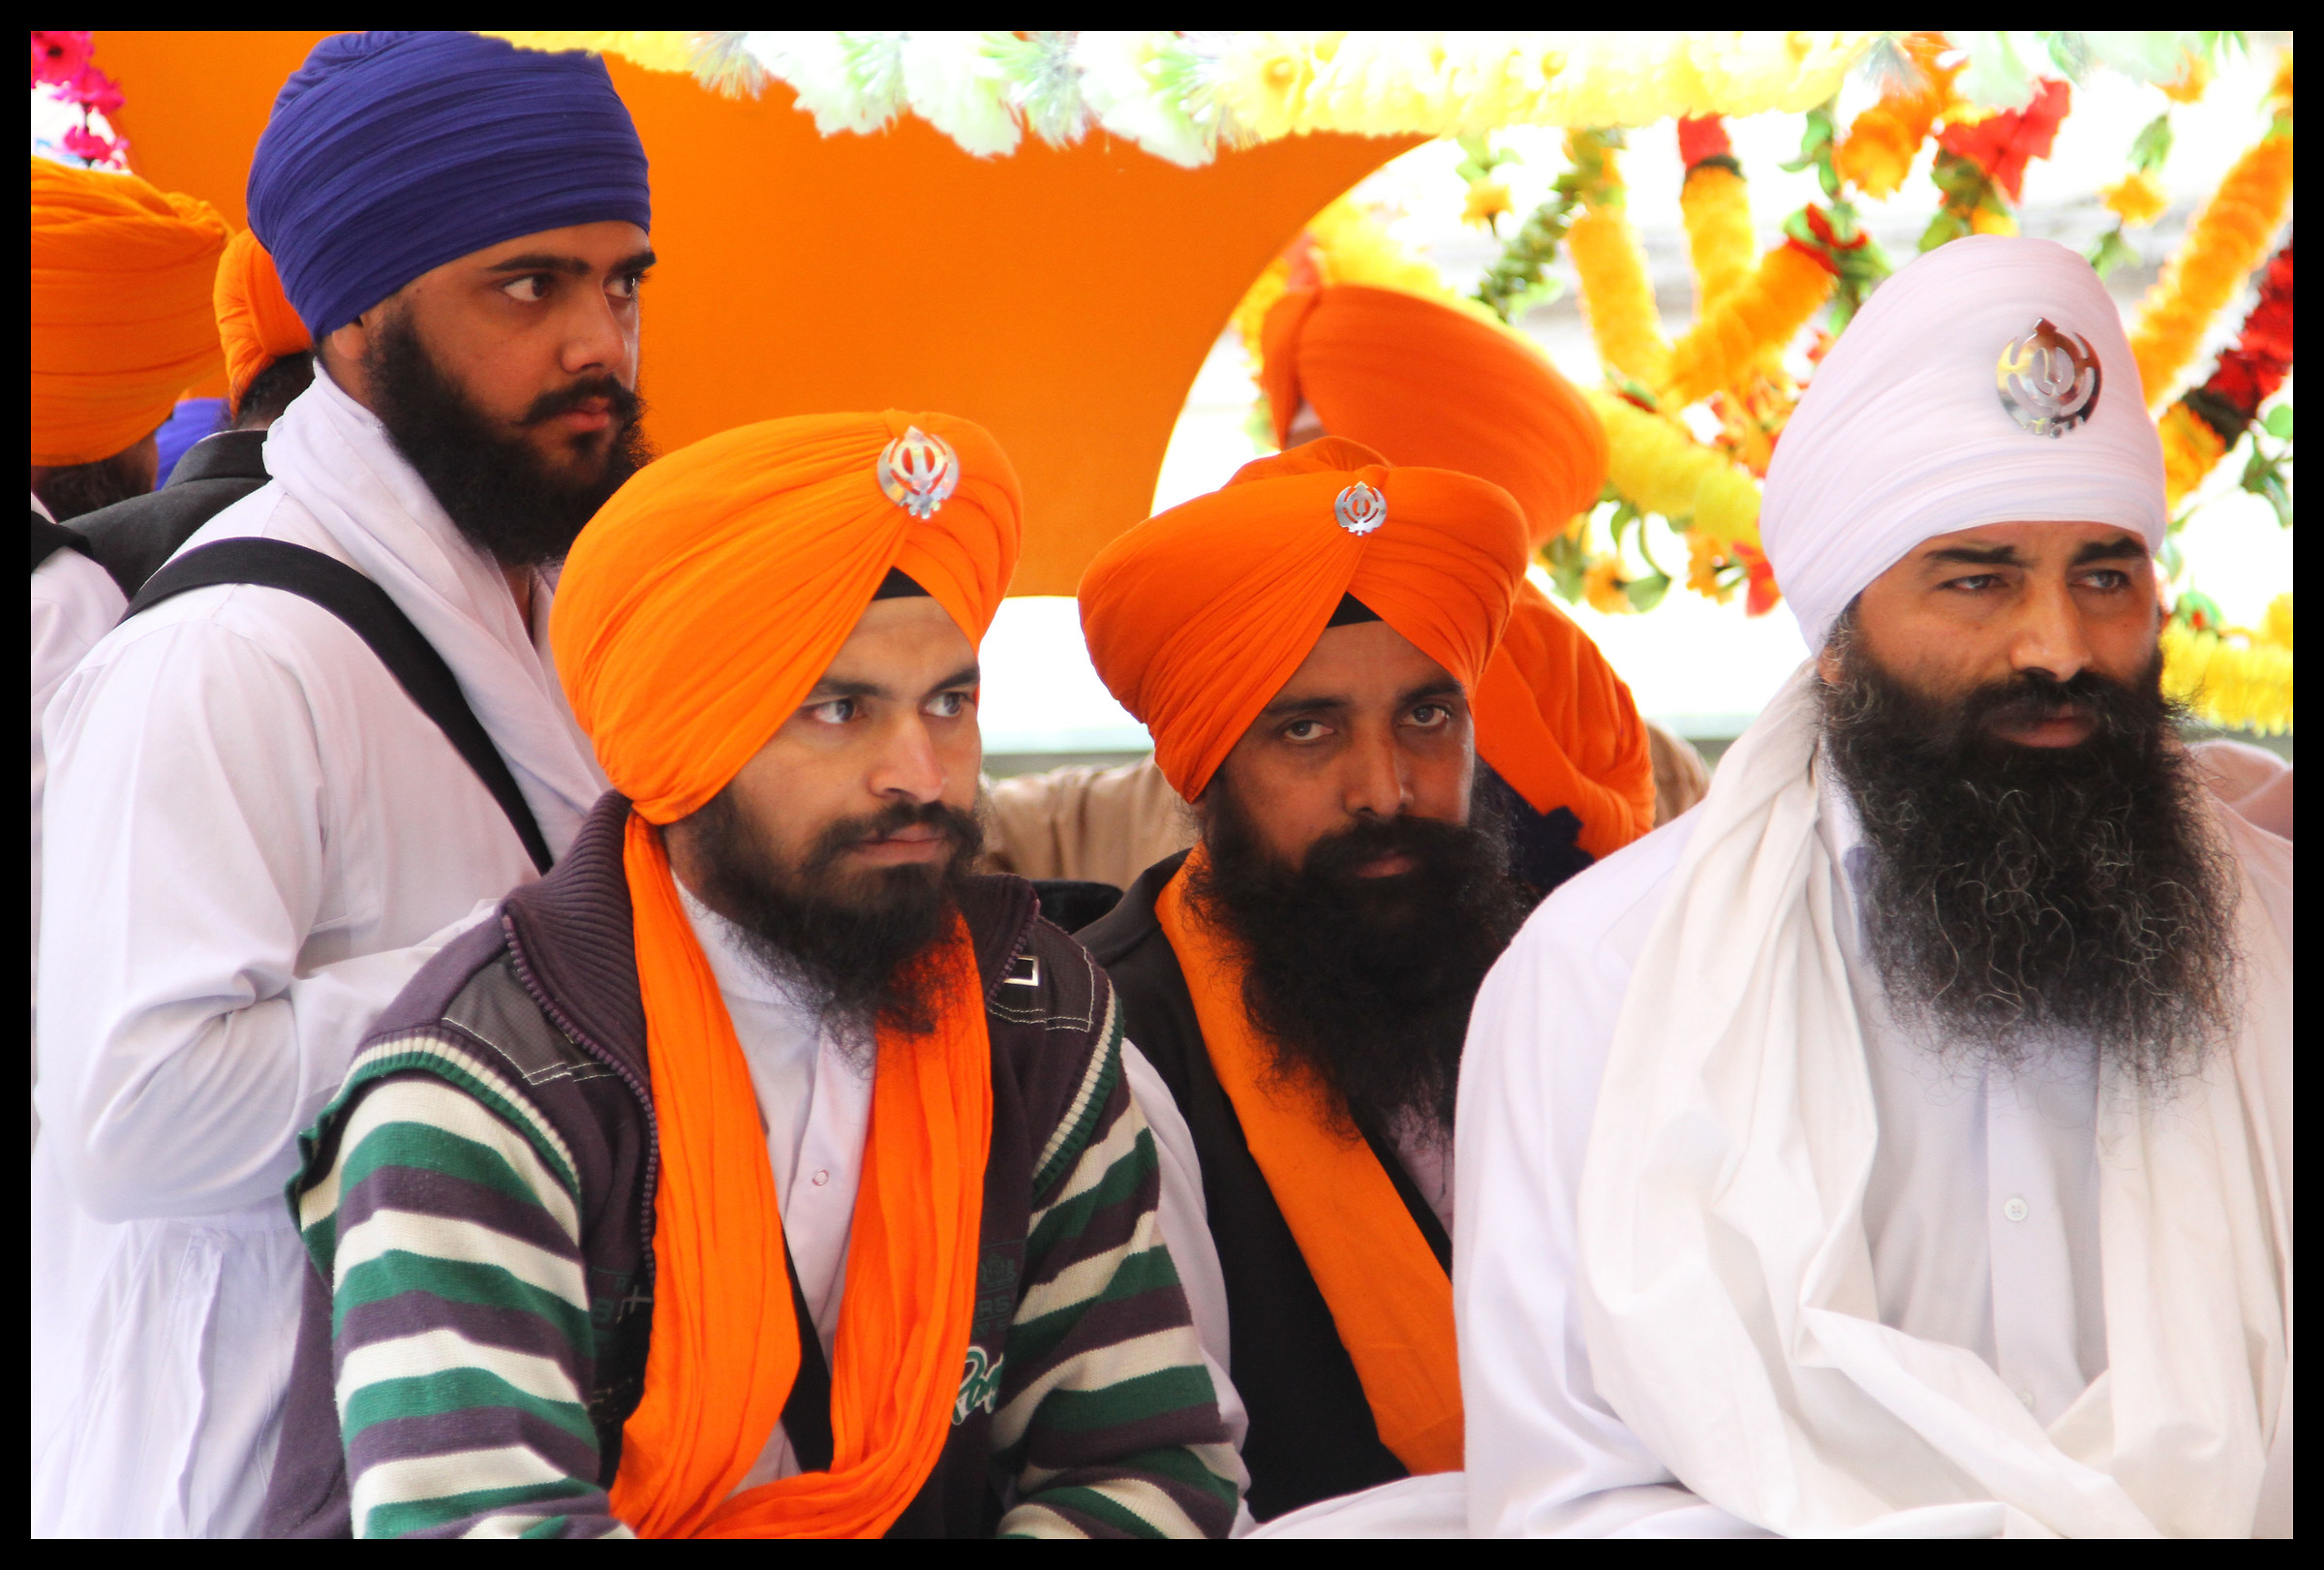 Gruppo Sikh...